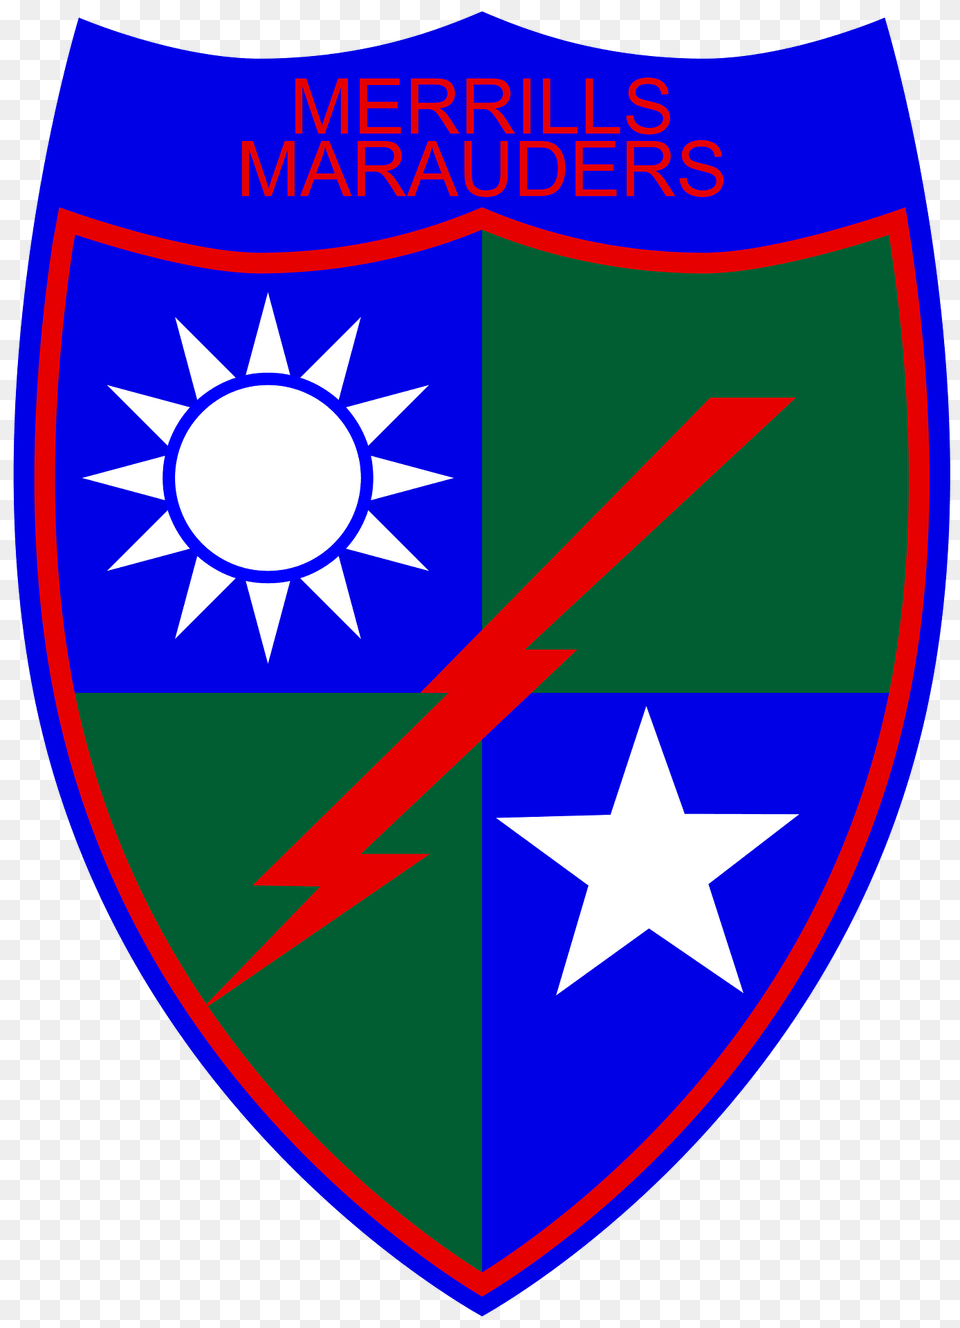 Merrills Marauders Clipart, Armor, Flag, Shield Png